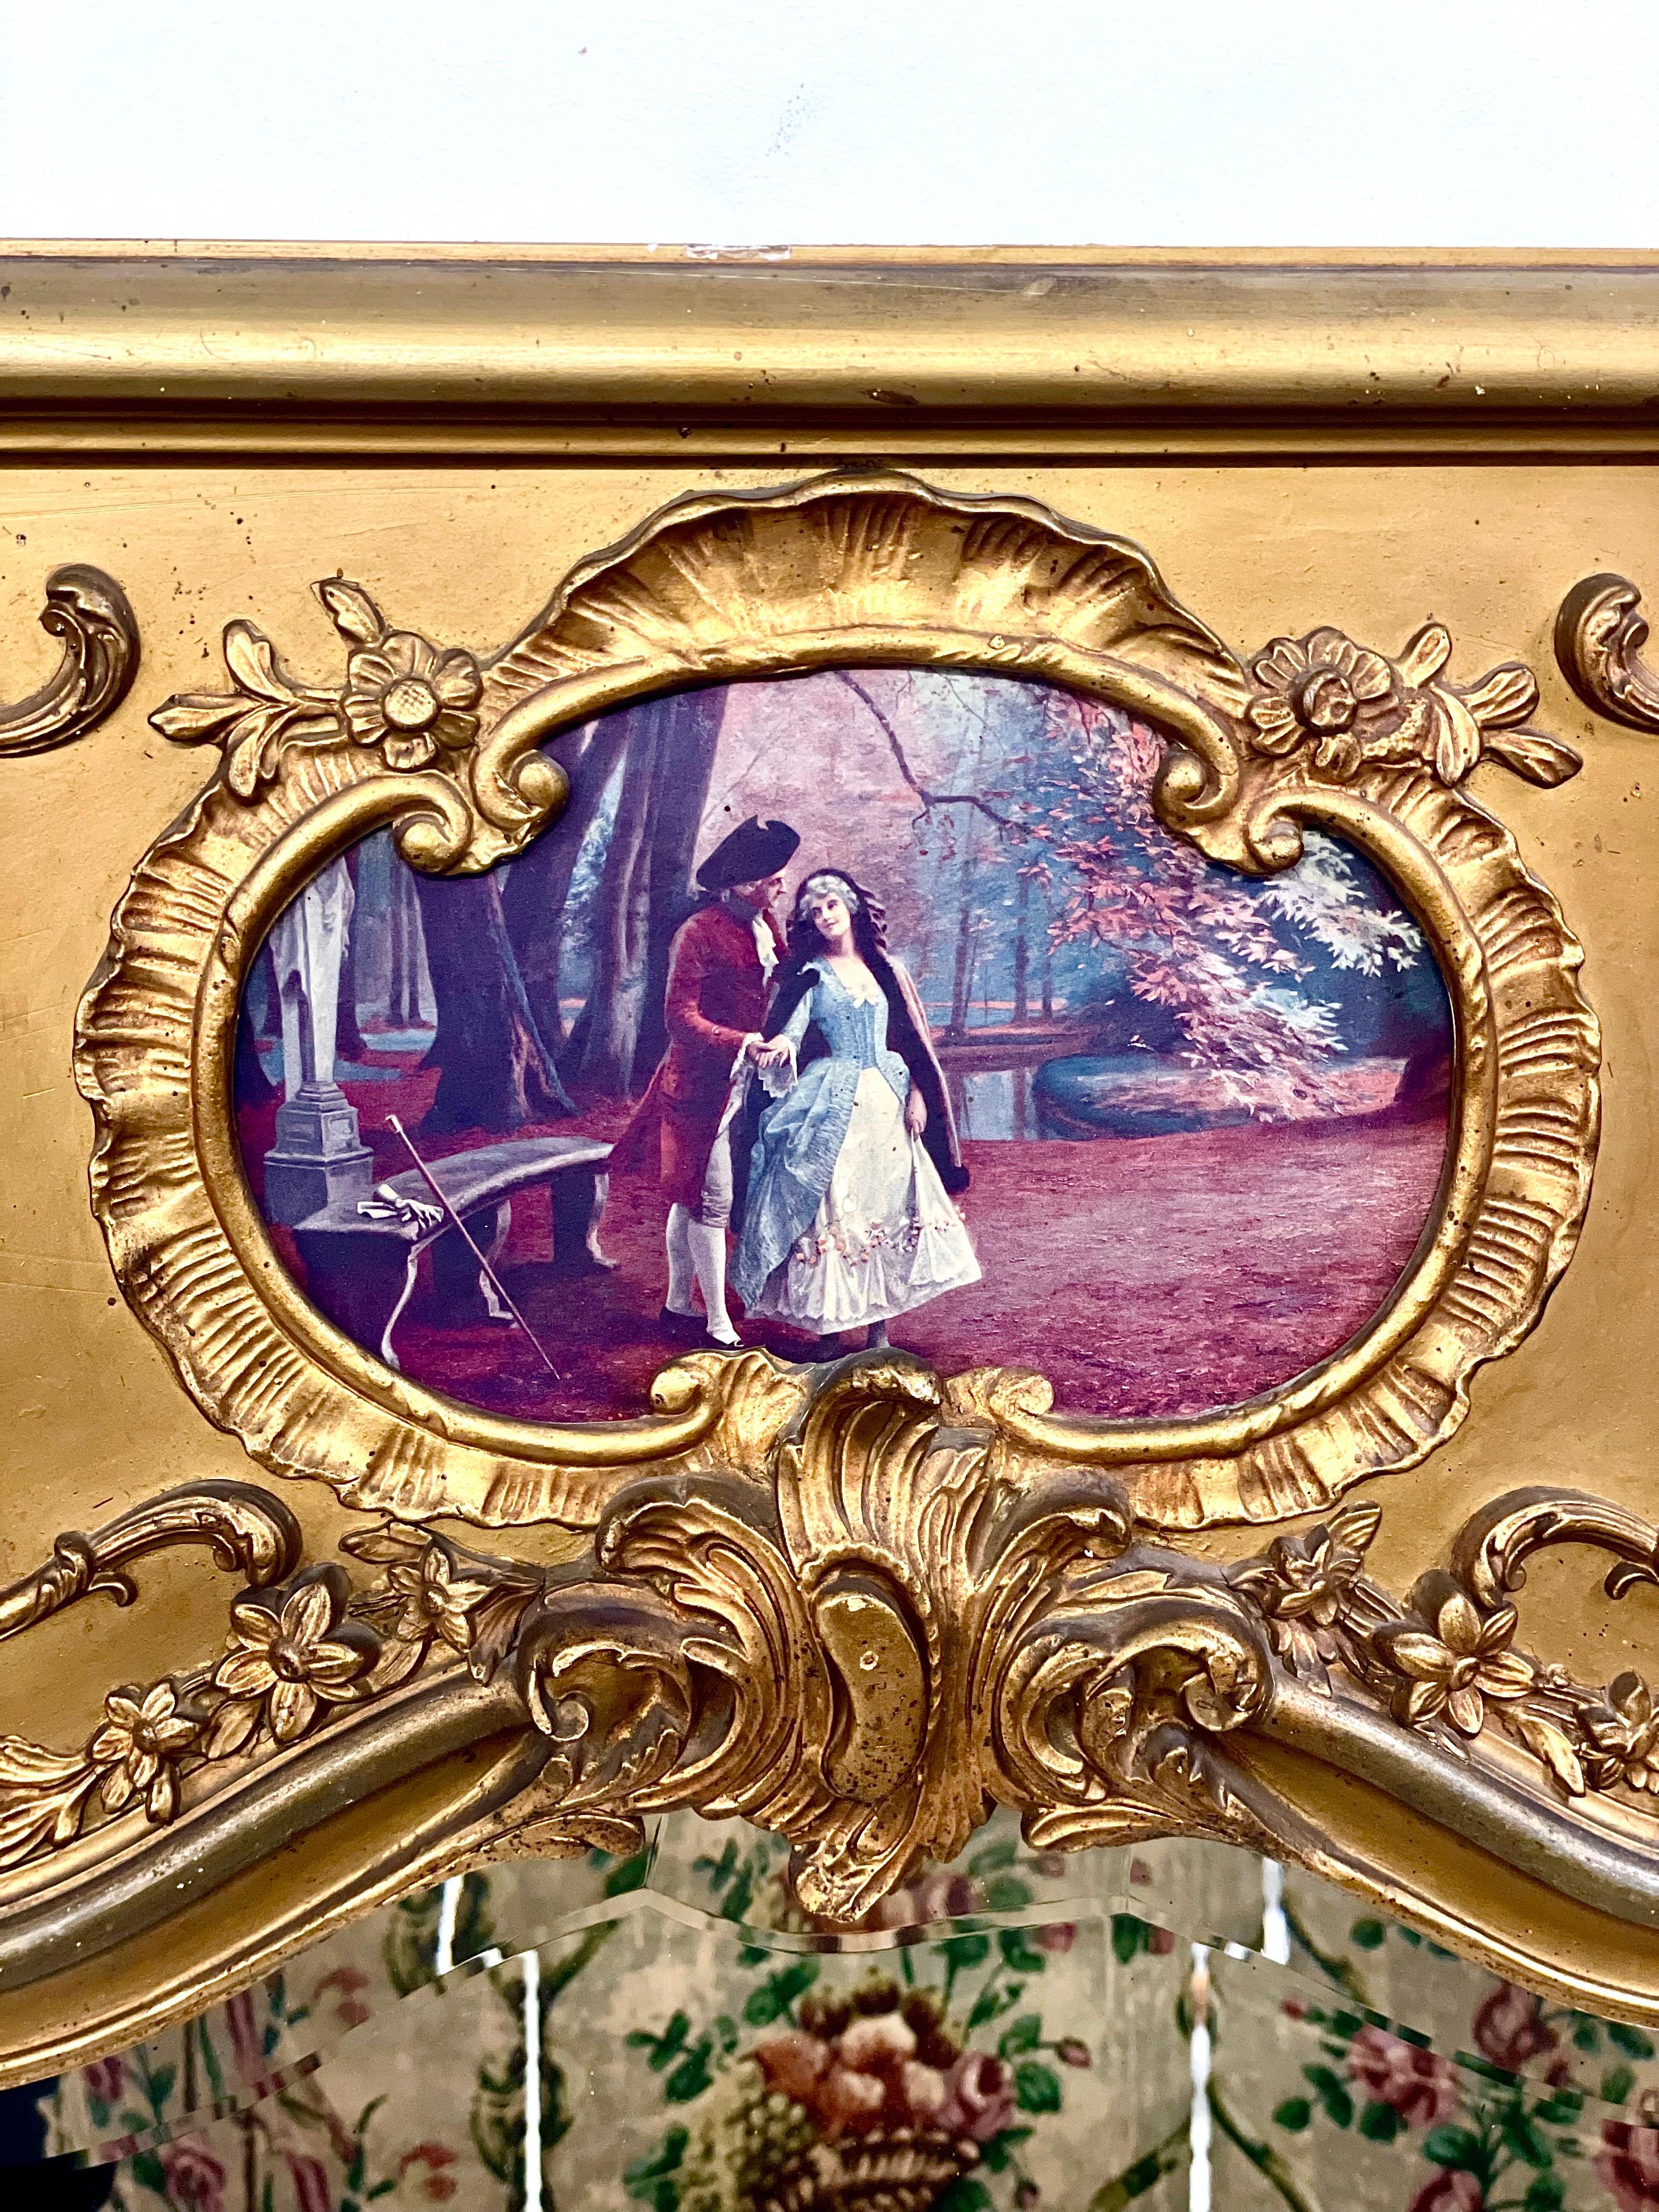 Ein beeindruckender und sehr hübscher Trumeau-Spiegel im Stil Ludwigs XV. aus vergoldetem Holz und Stuck im Rokoko-Stil, der im oberen Teil eine Reproduktion einer romantischen Szene mit zwei Liebenden in einer stilisierten Waldlandschaft zeigt. Das